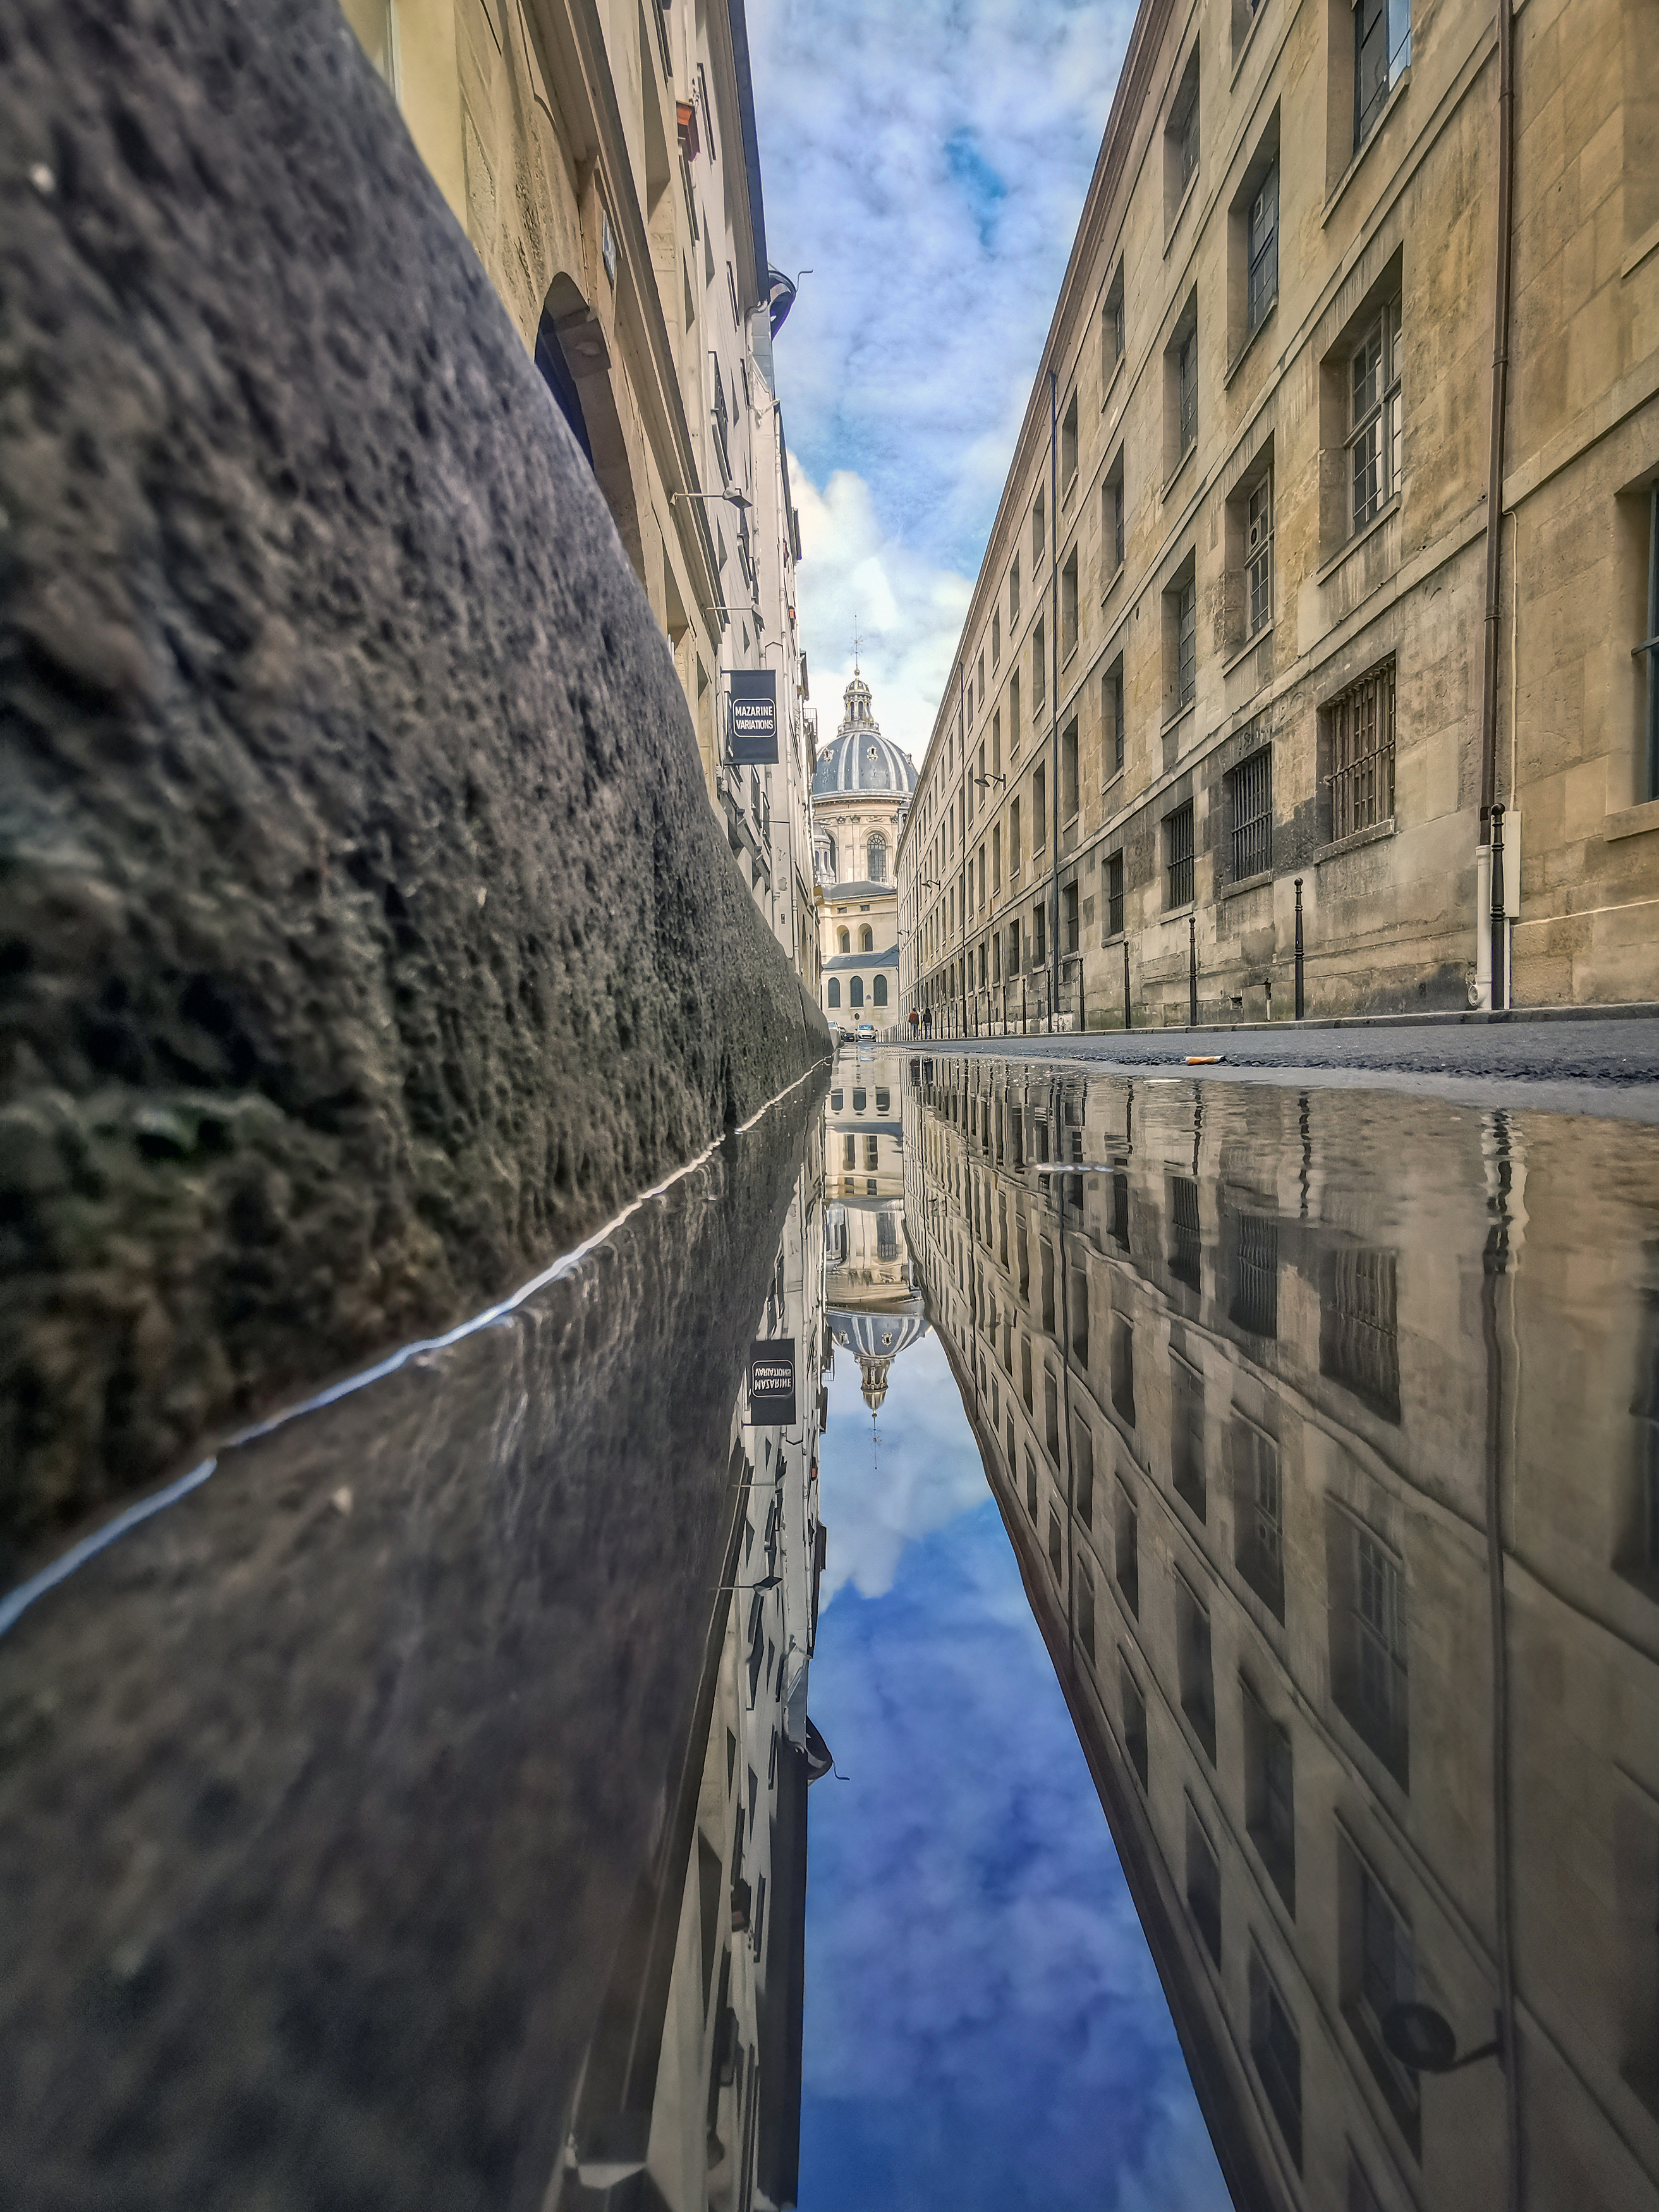 #paris #Architecture #City #Travel #reflection, Mojtaba Chenari